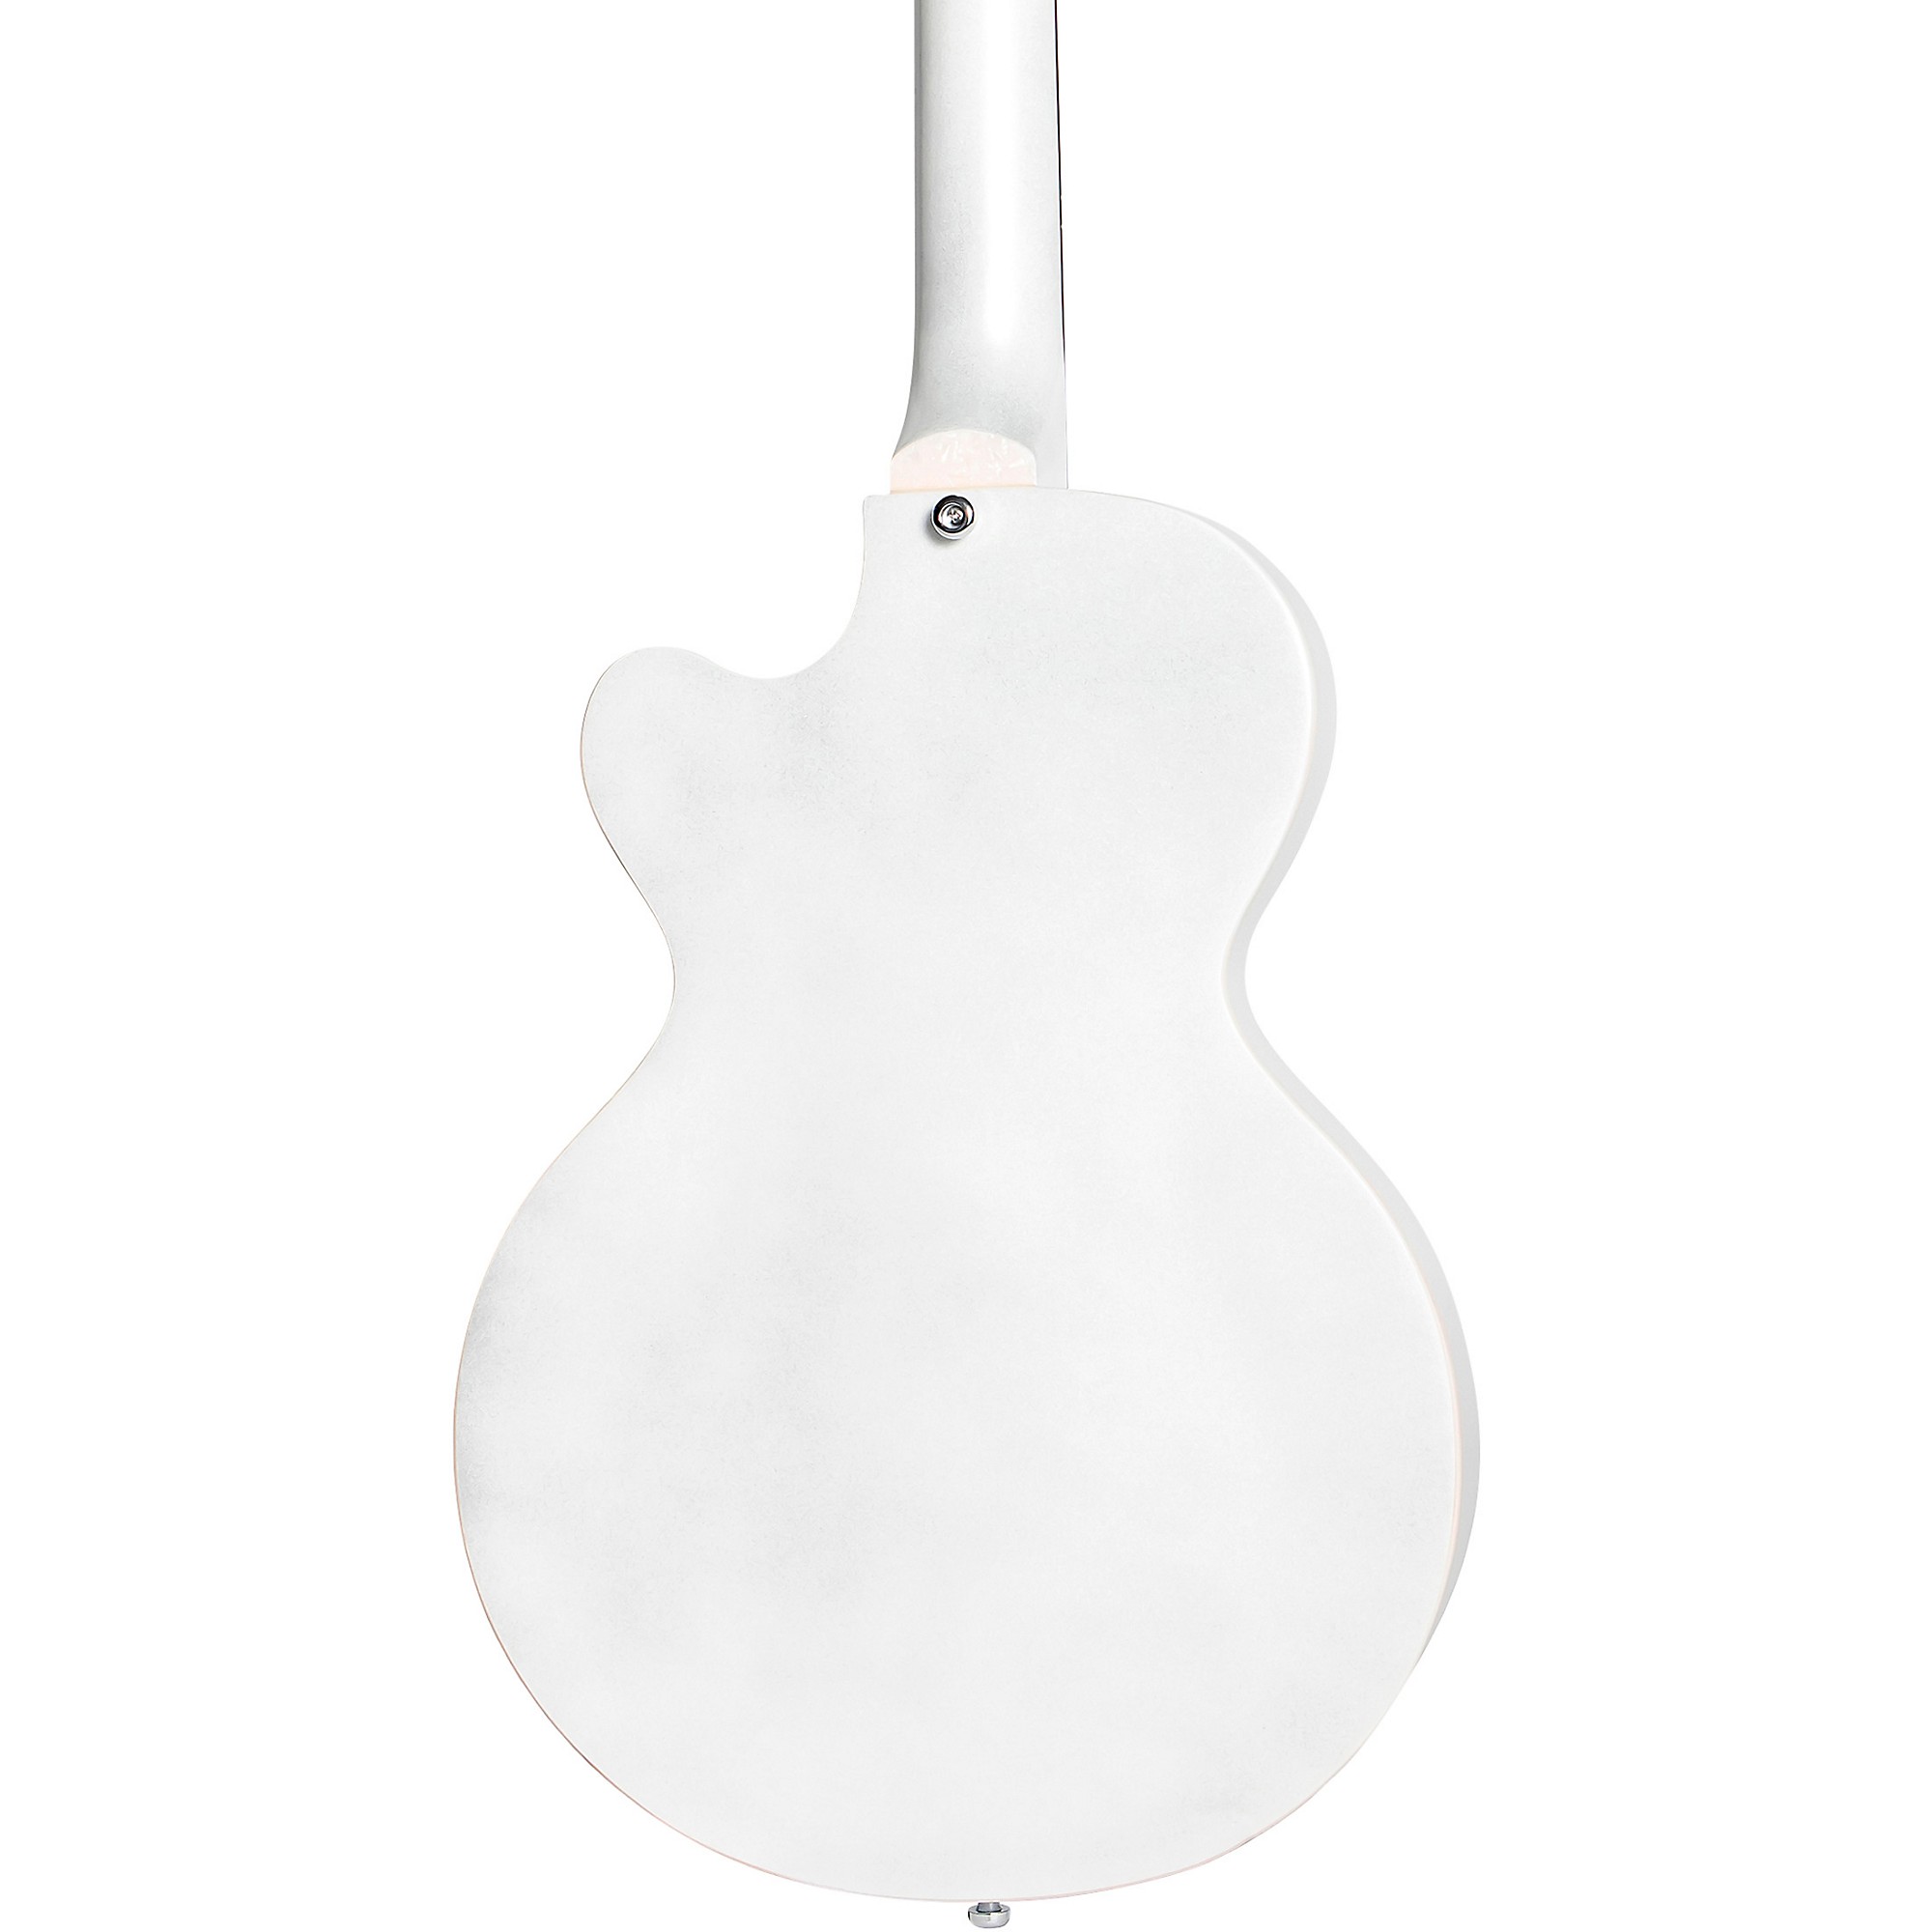 цена Клубный бас-гитара Hofner Ignition Series с короткой мензурой жемчужно-белого цвета